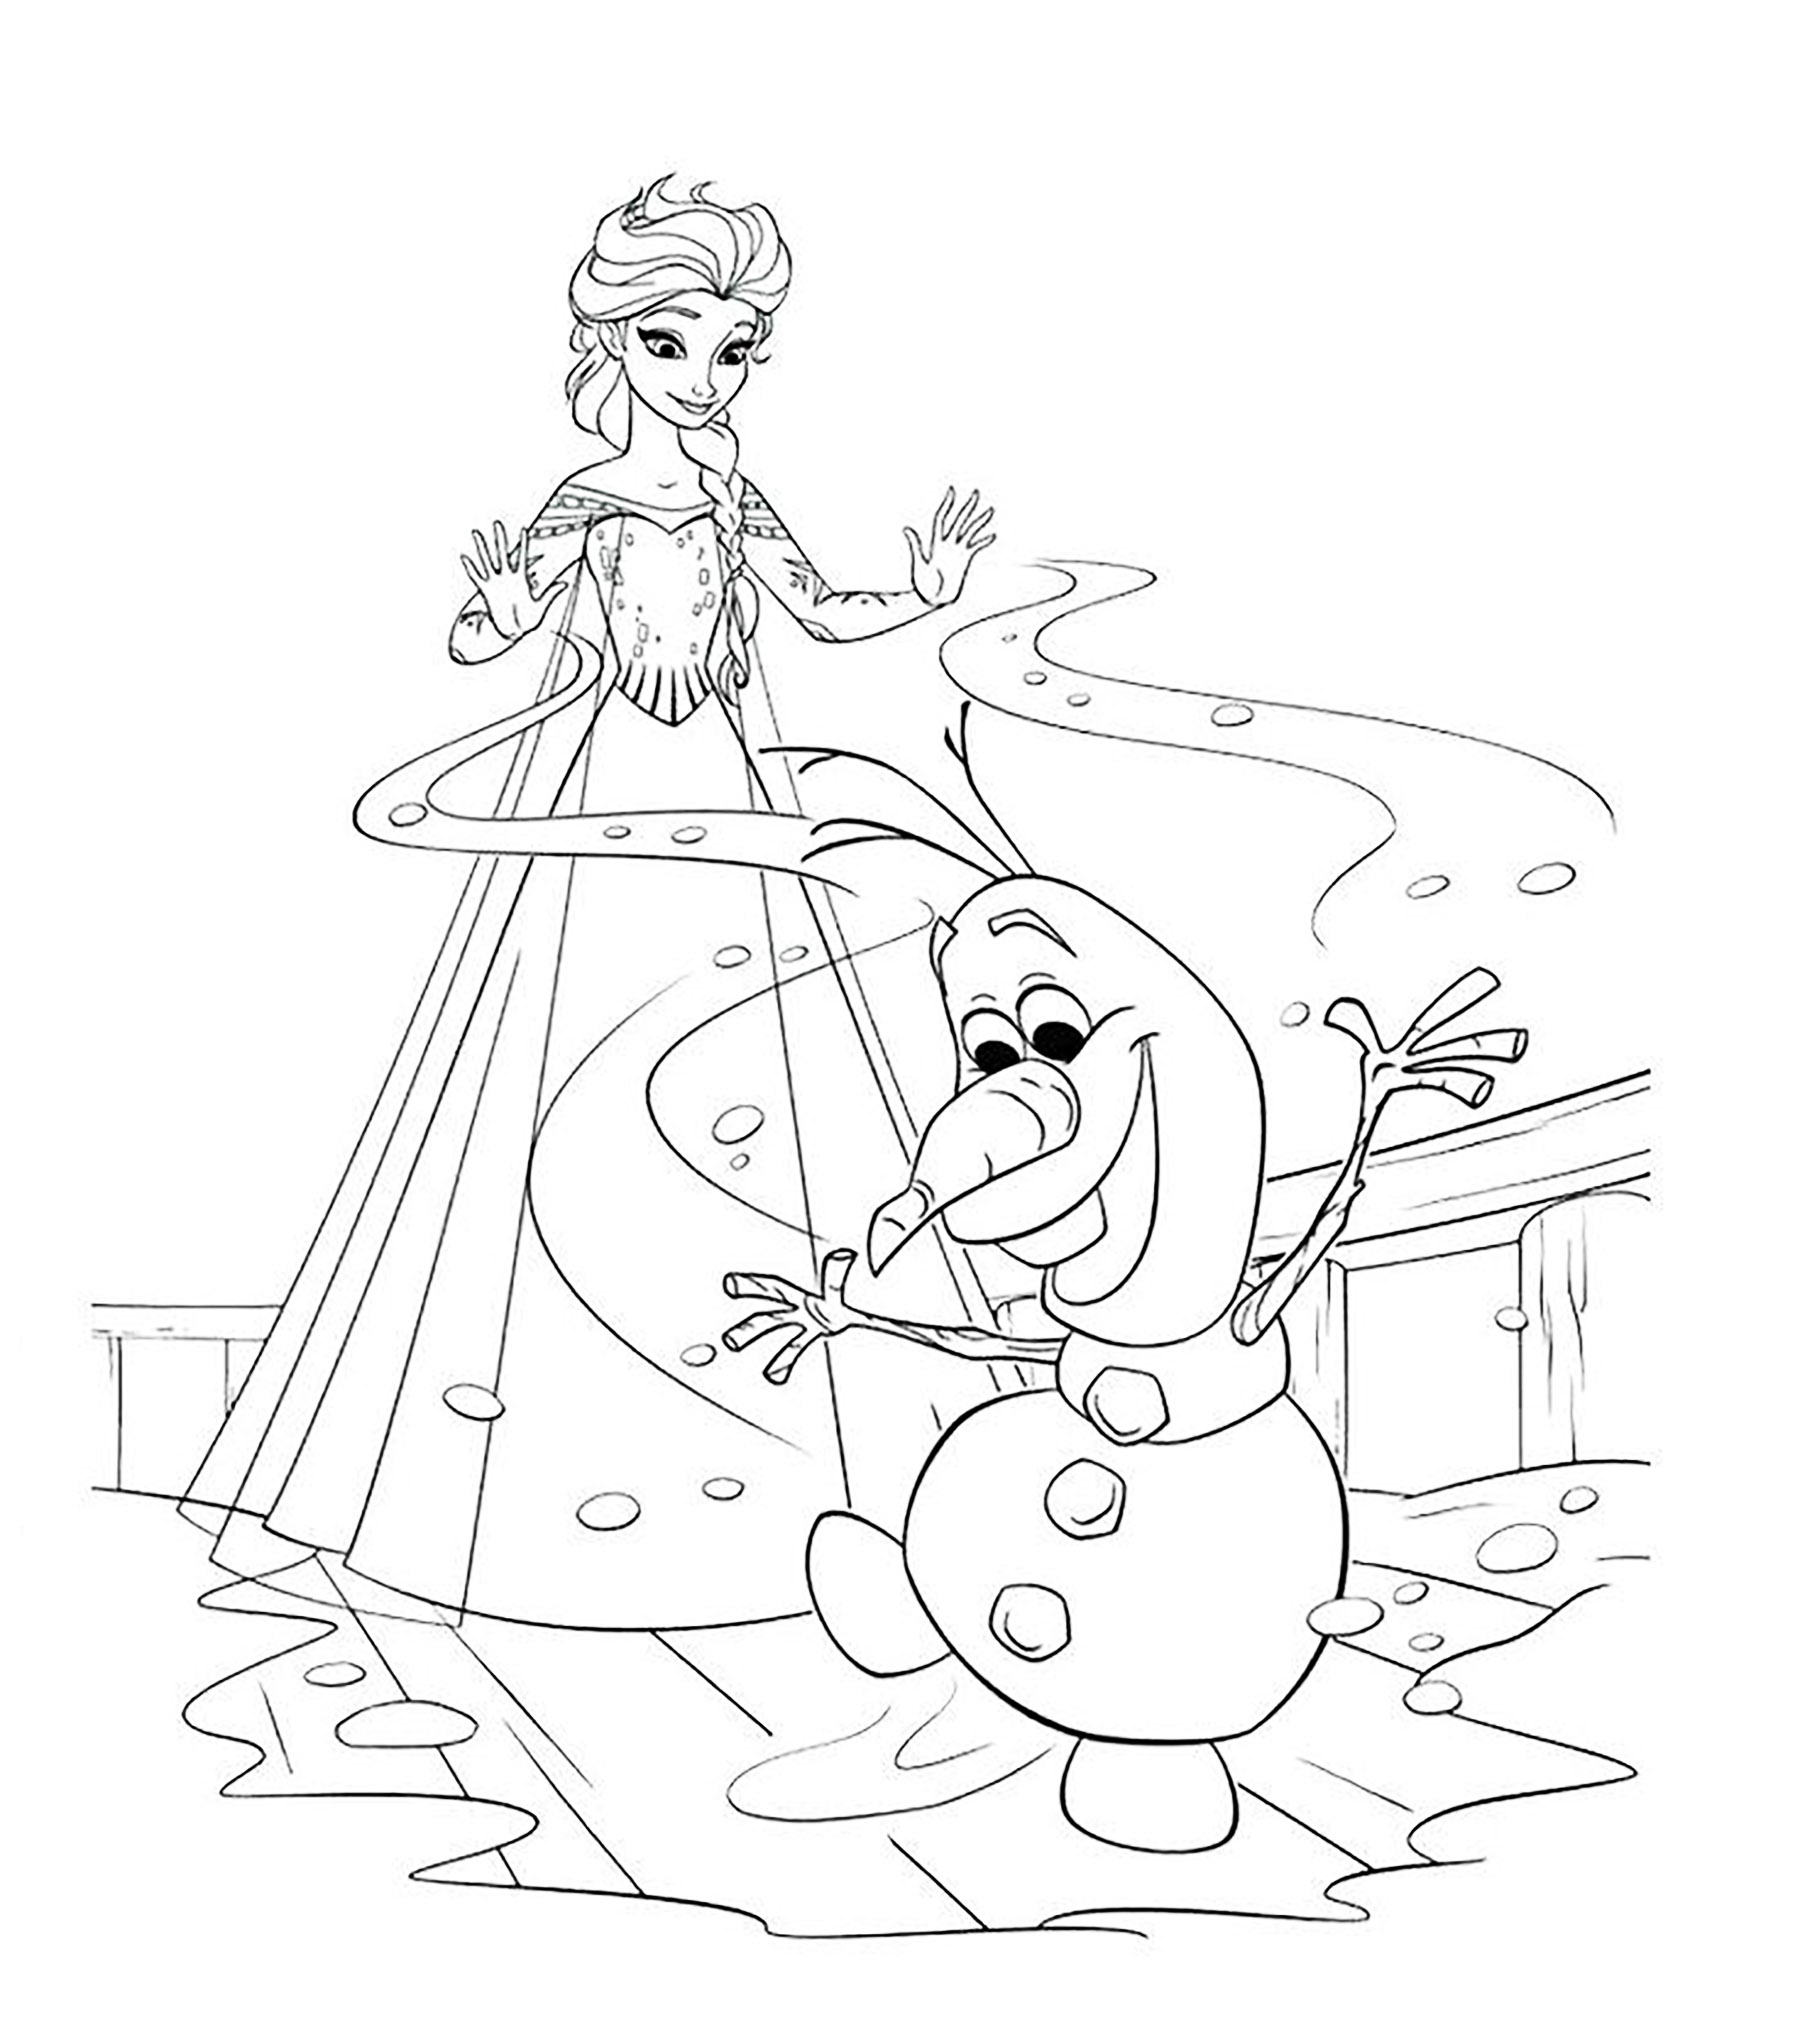 Desenhos para colorir para crianças de Frozen: O Reino do Gelo para imprimir